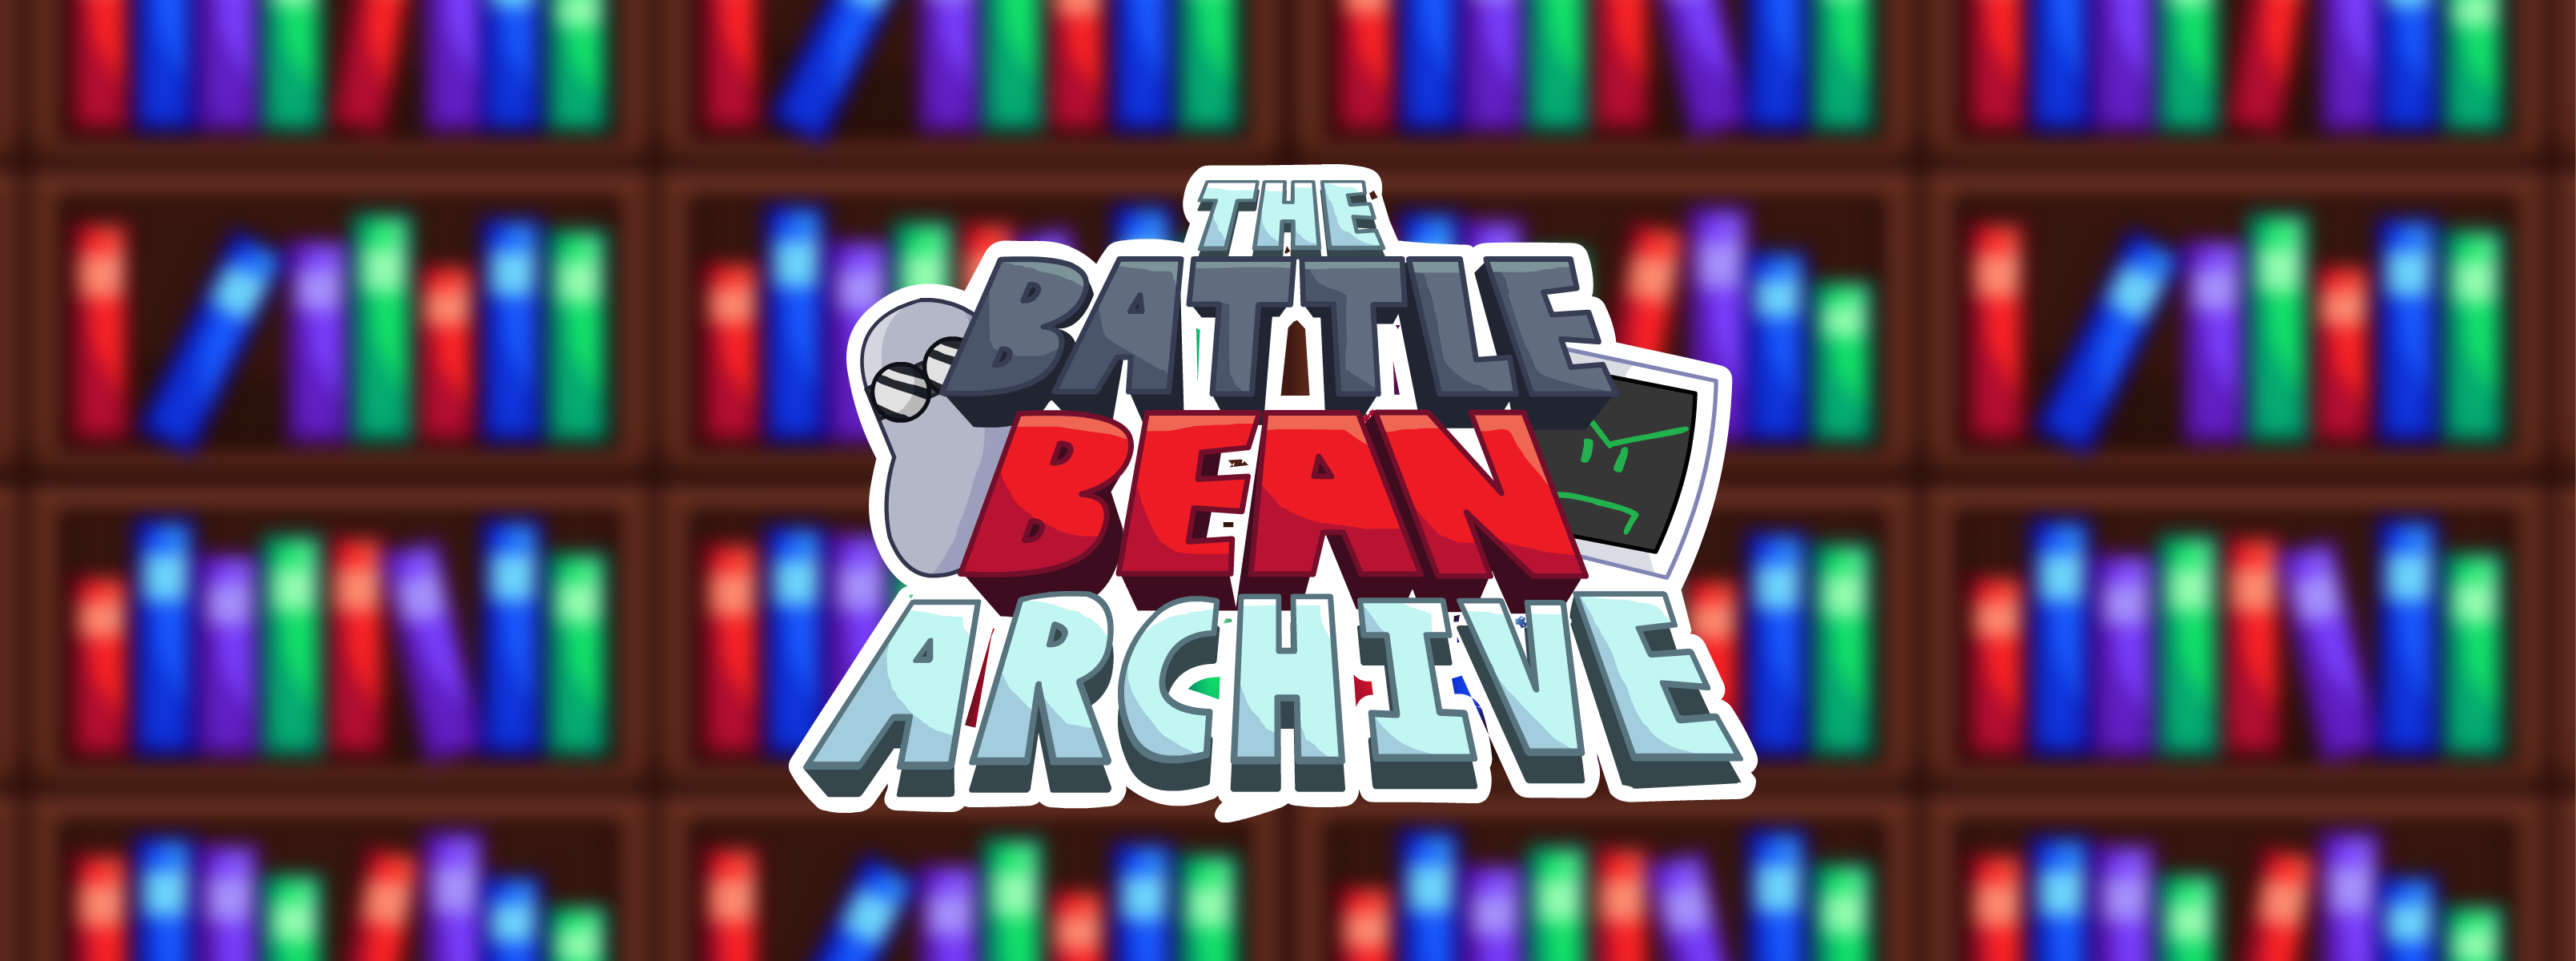 The Battle Bean Archive